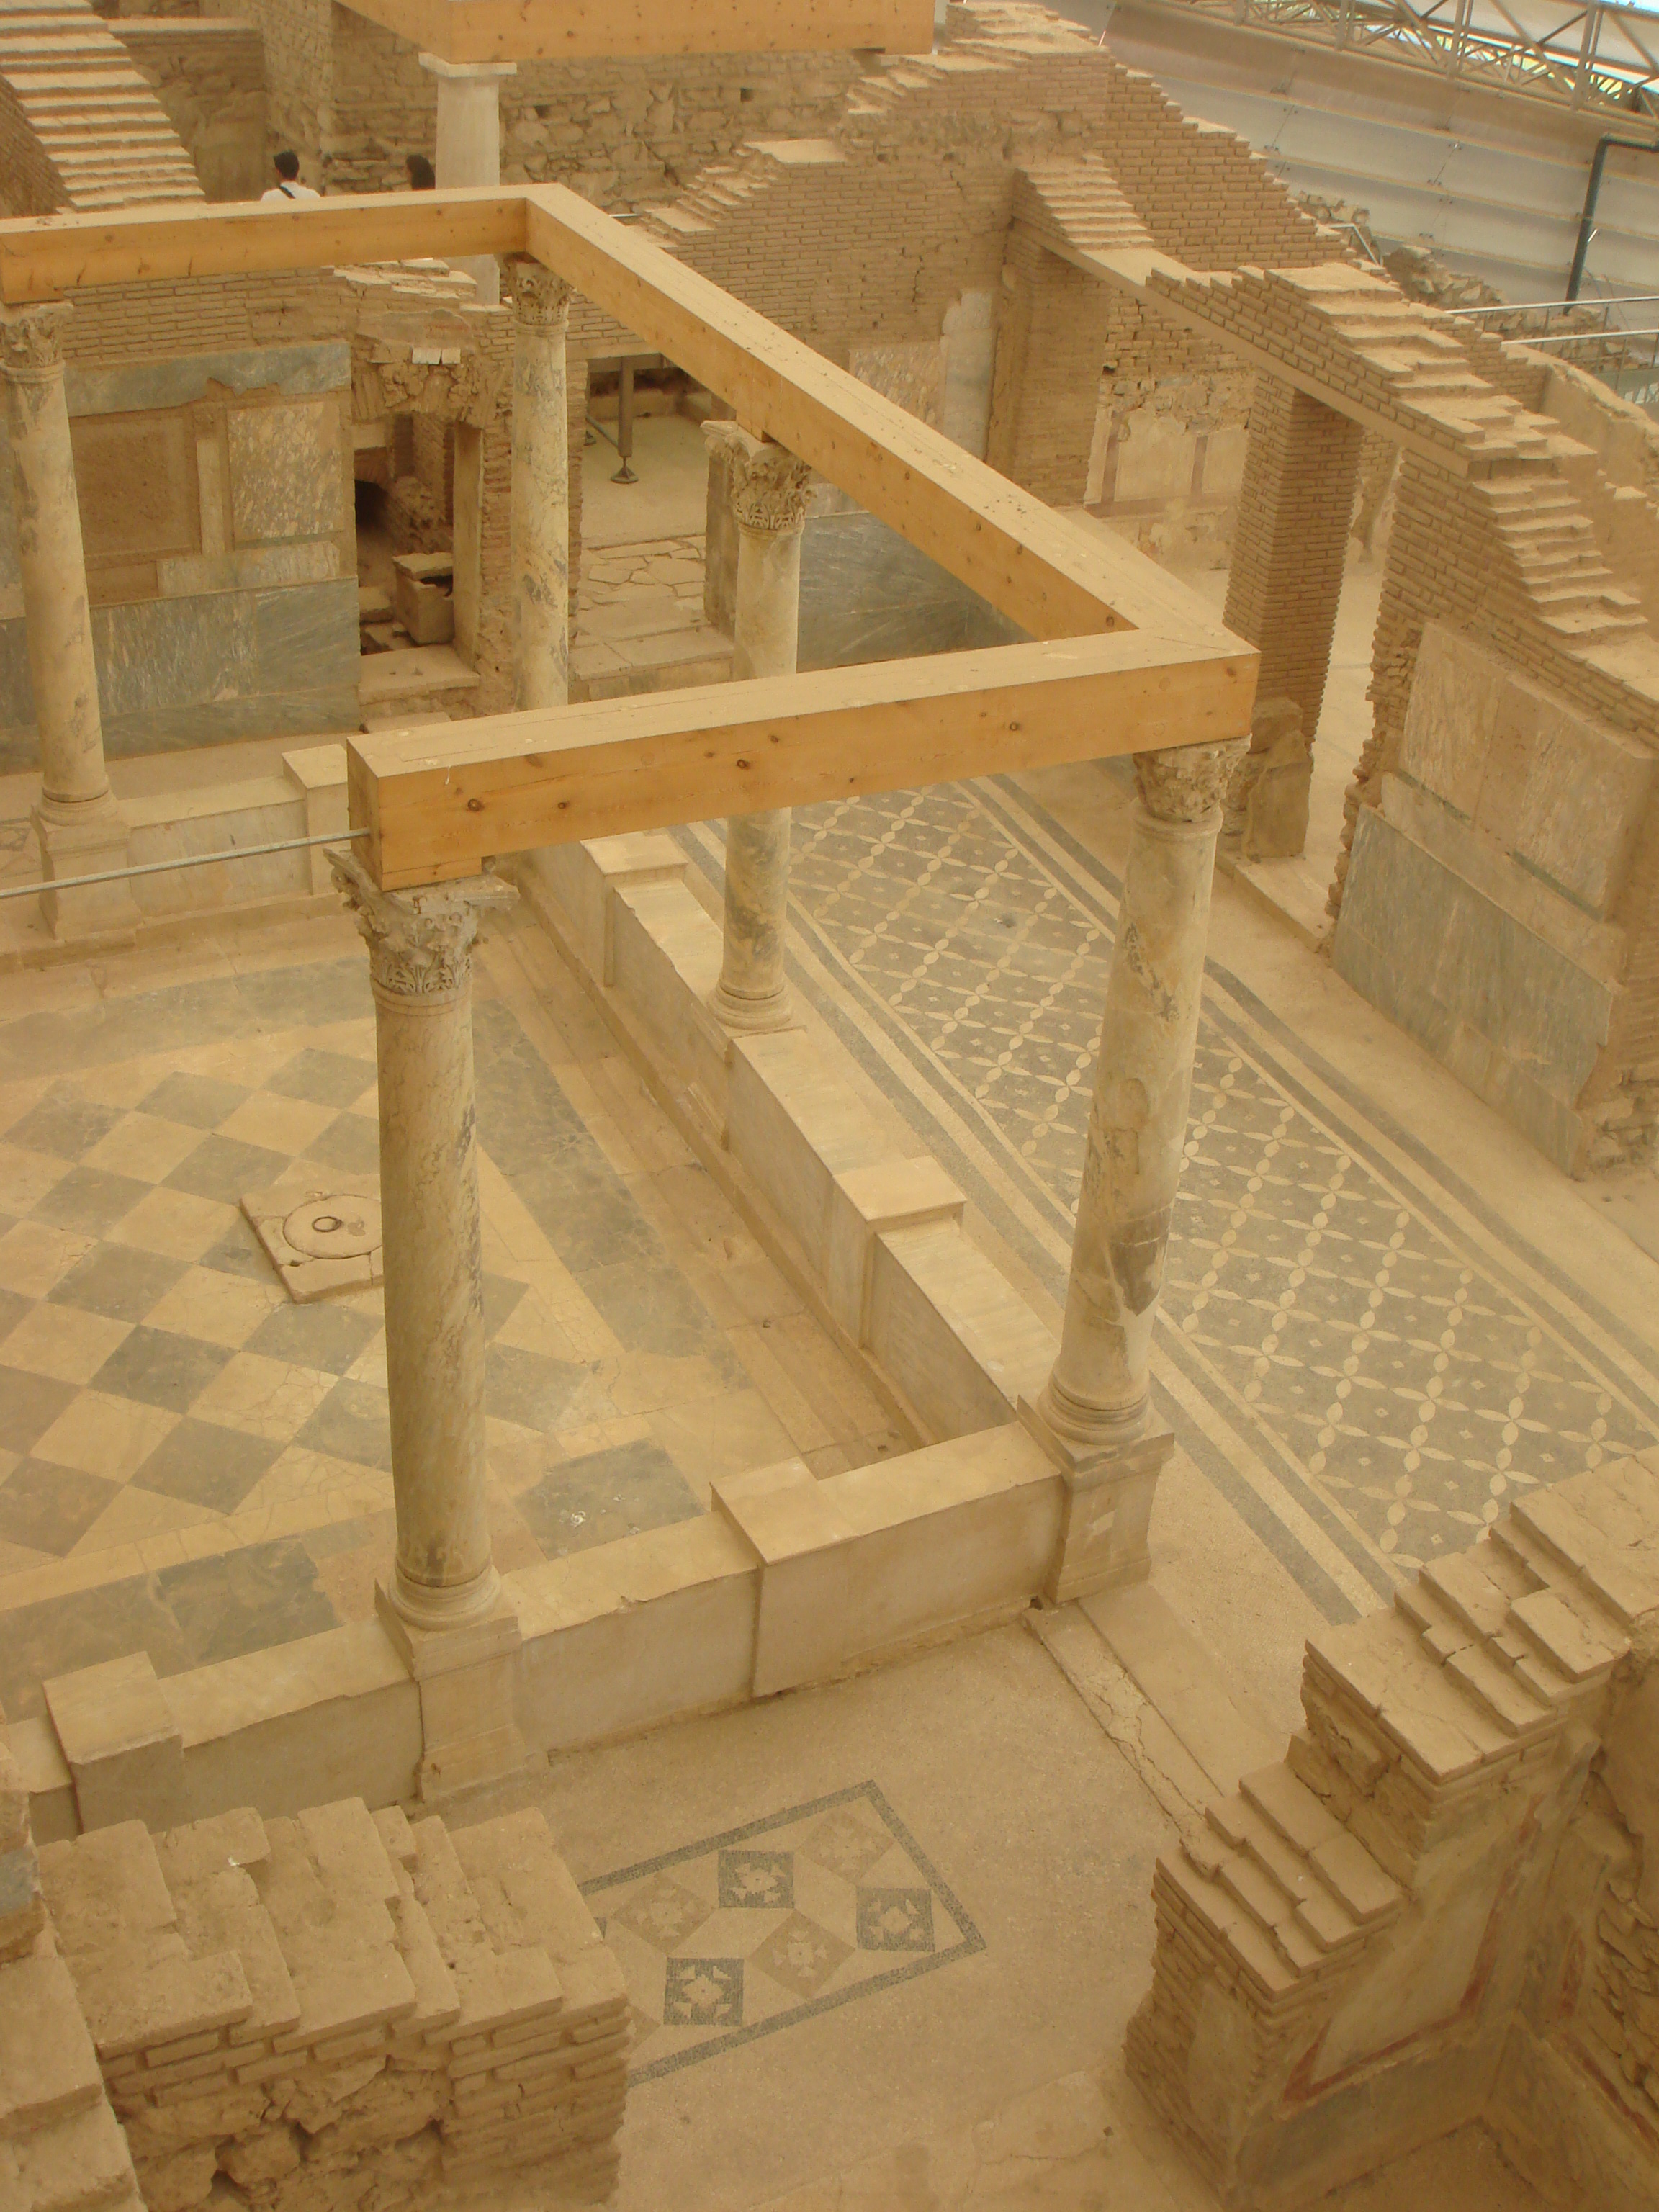 Ephesus tile floors